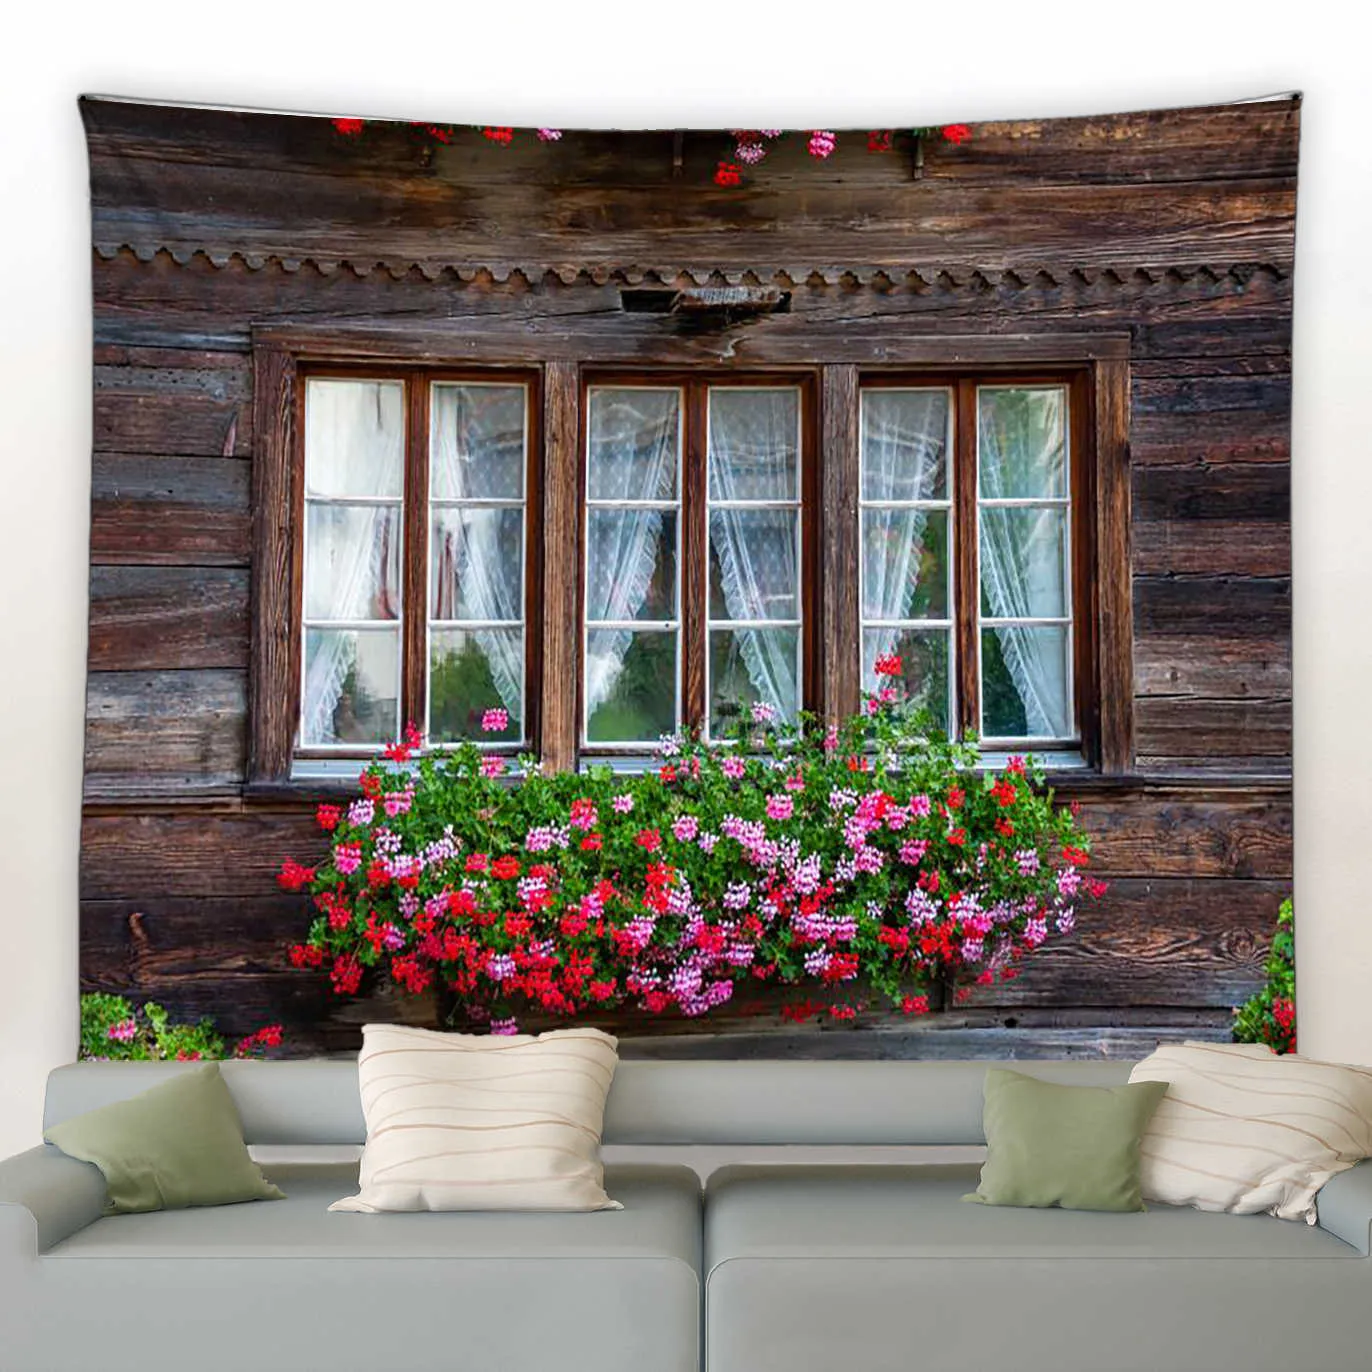 タペストリーフェンスピンクの花タペストリー窓花庭園自然植物壁ぶら下がっているモダンホームリビングルームパティオ装飾